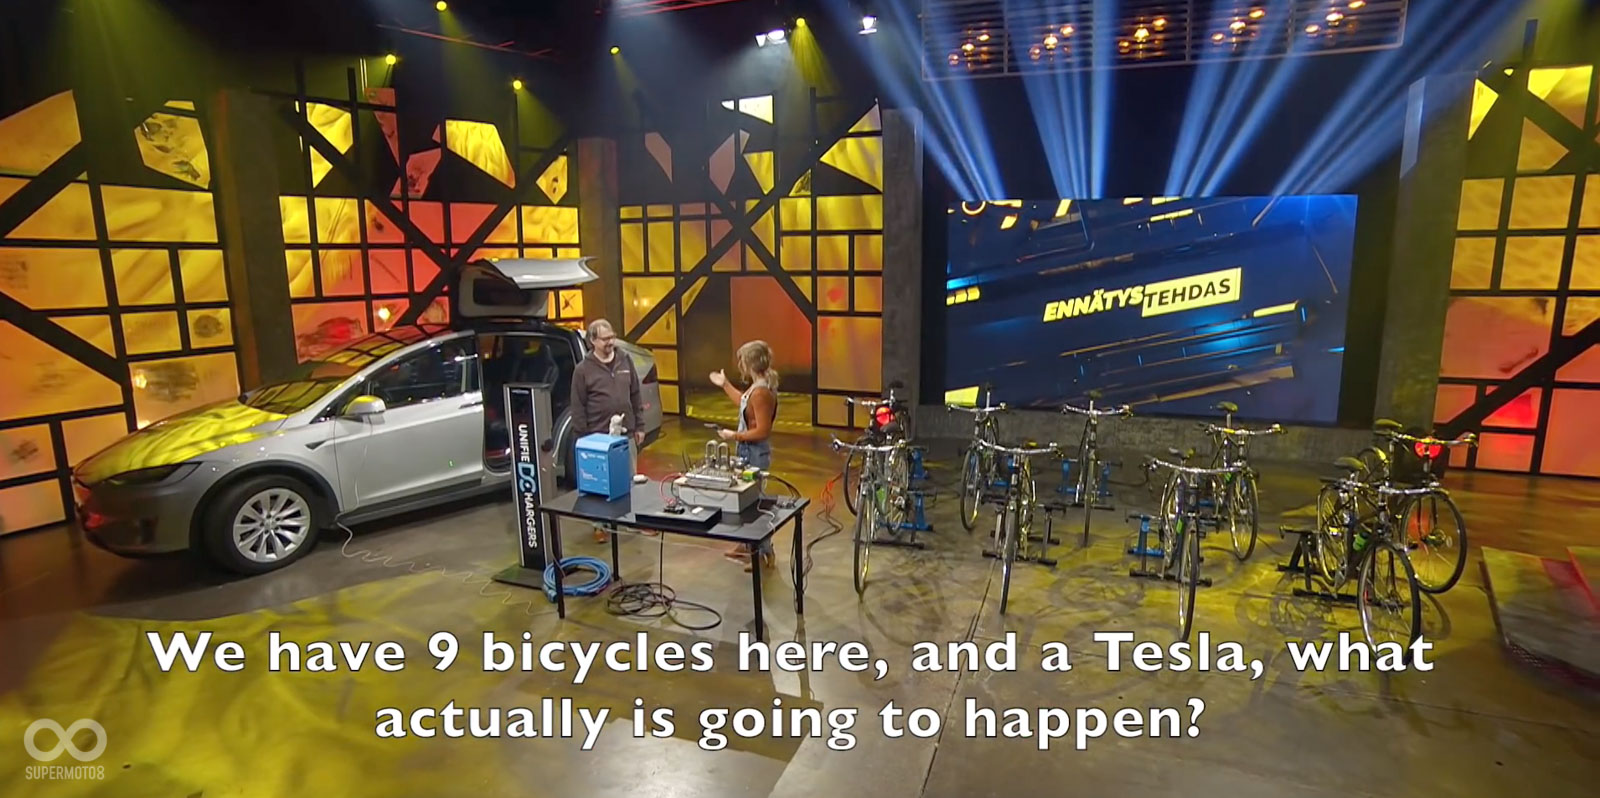 別懷疑，透過腳踏車幫Tesla充電，就是今天的亮點